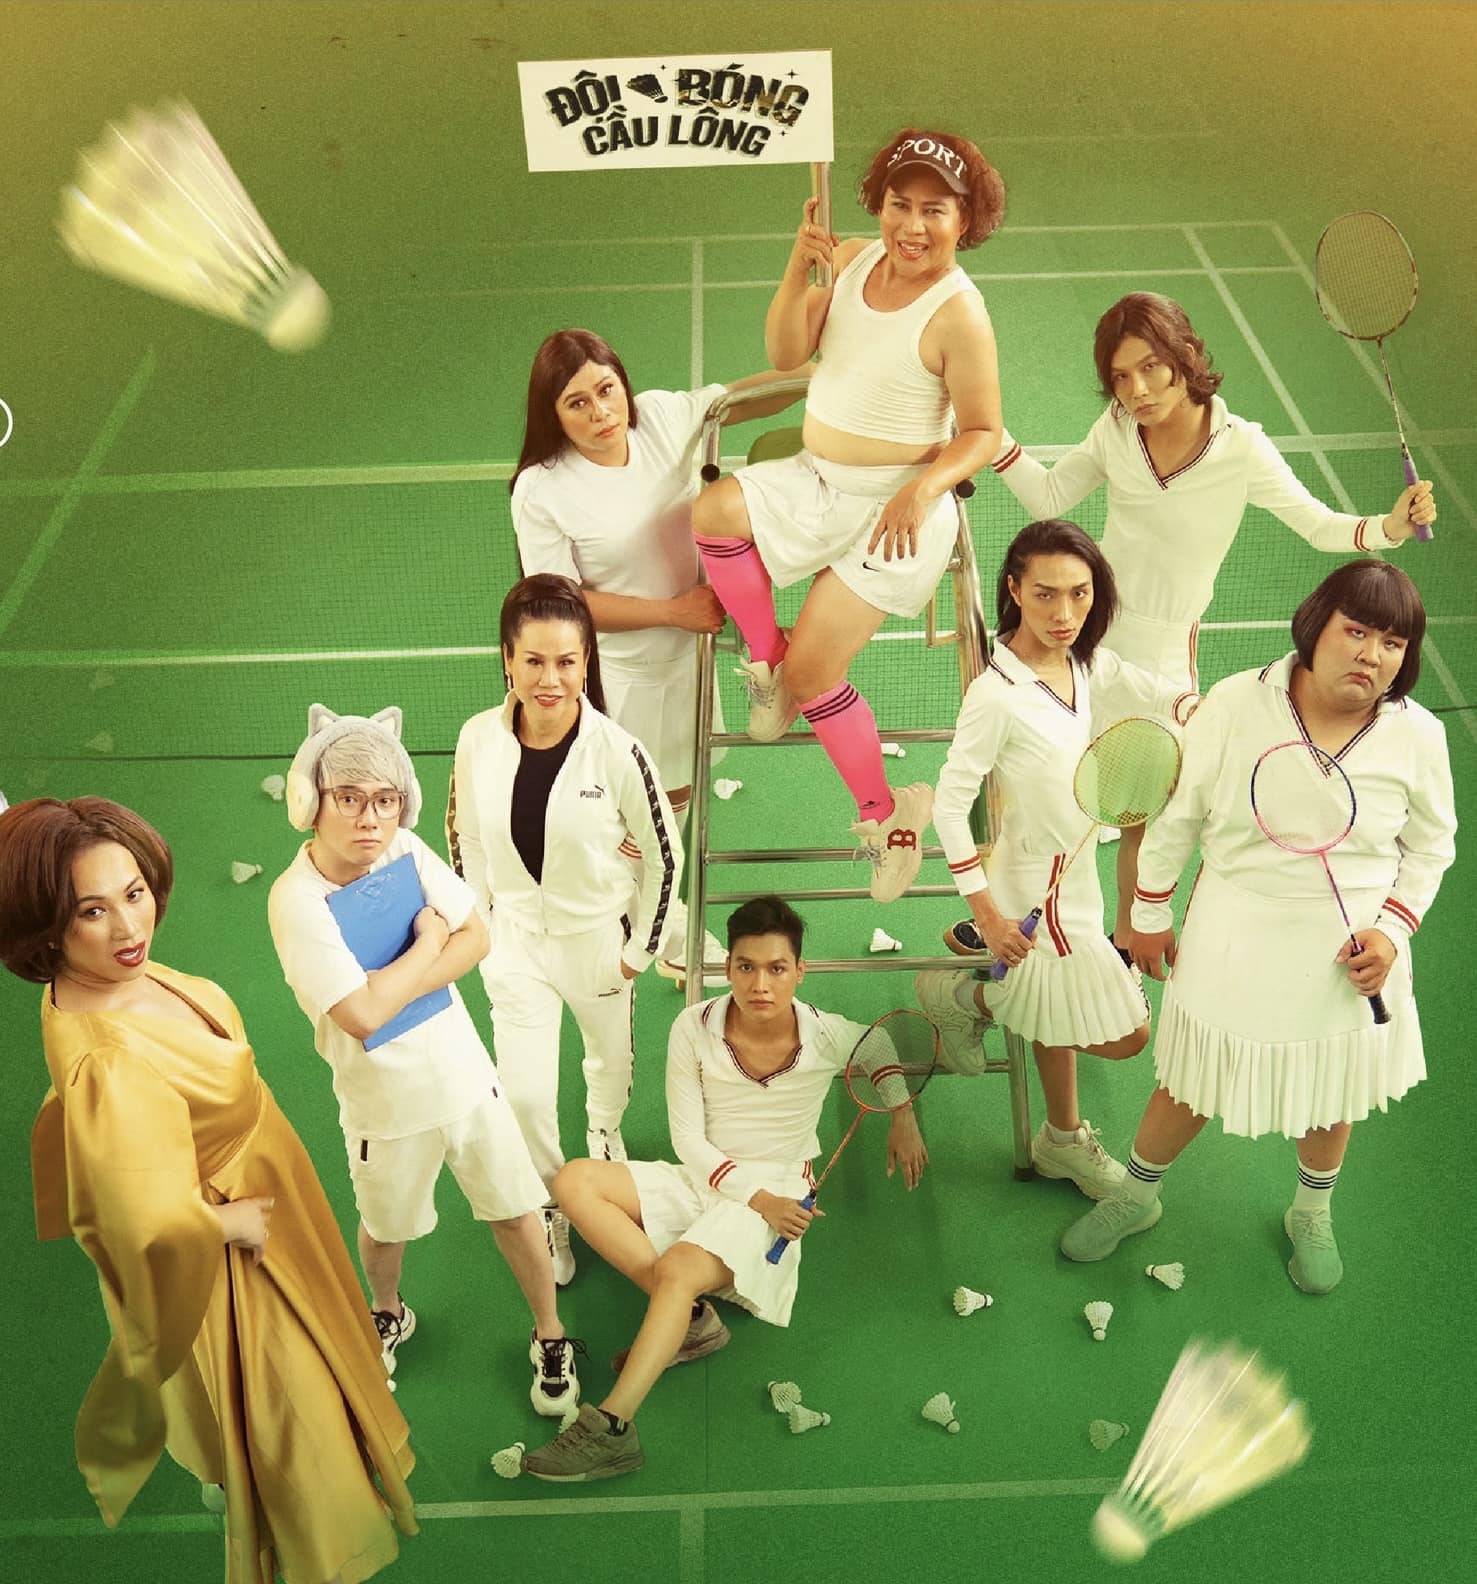 Poster&nbsp;web-drama "Đội bóng cầu lông"